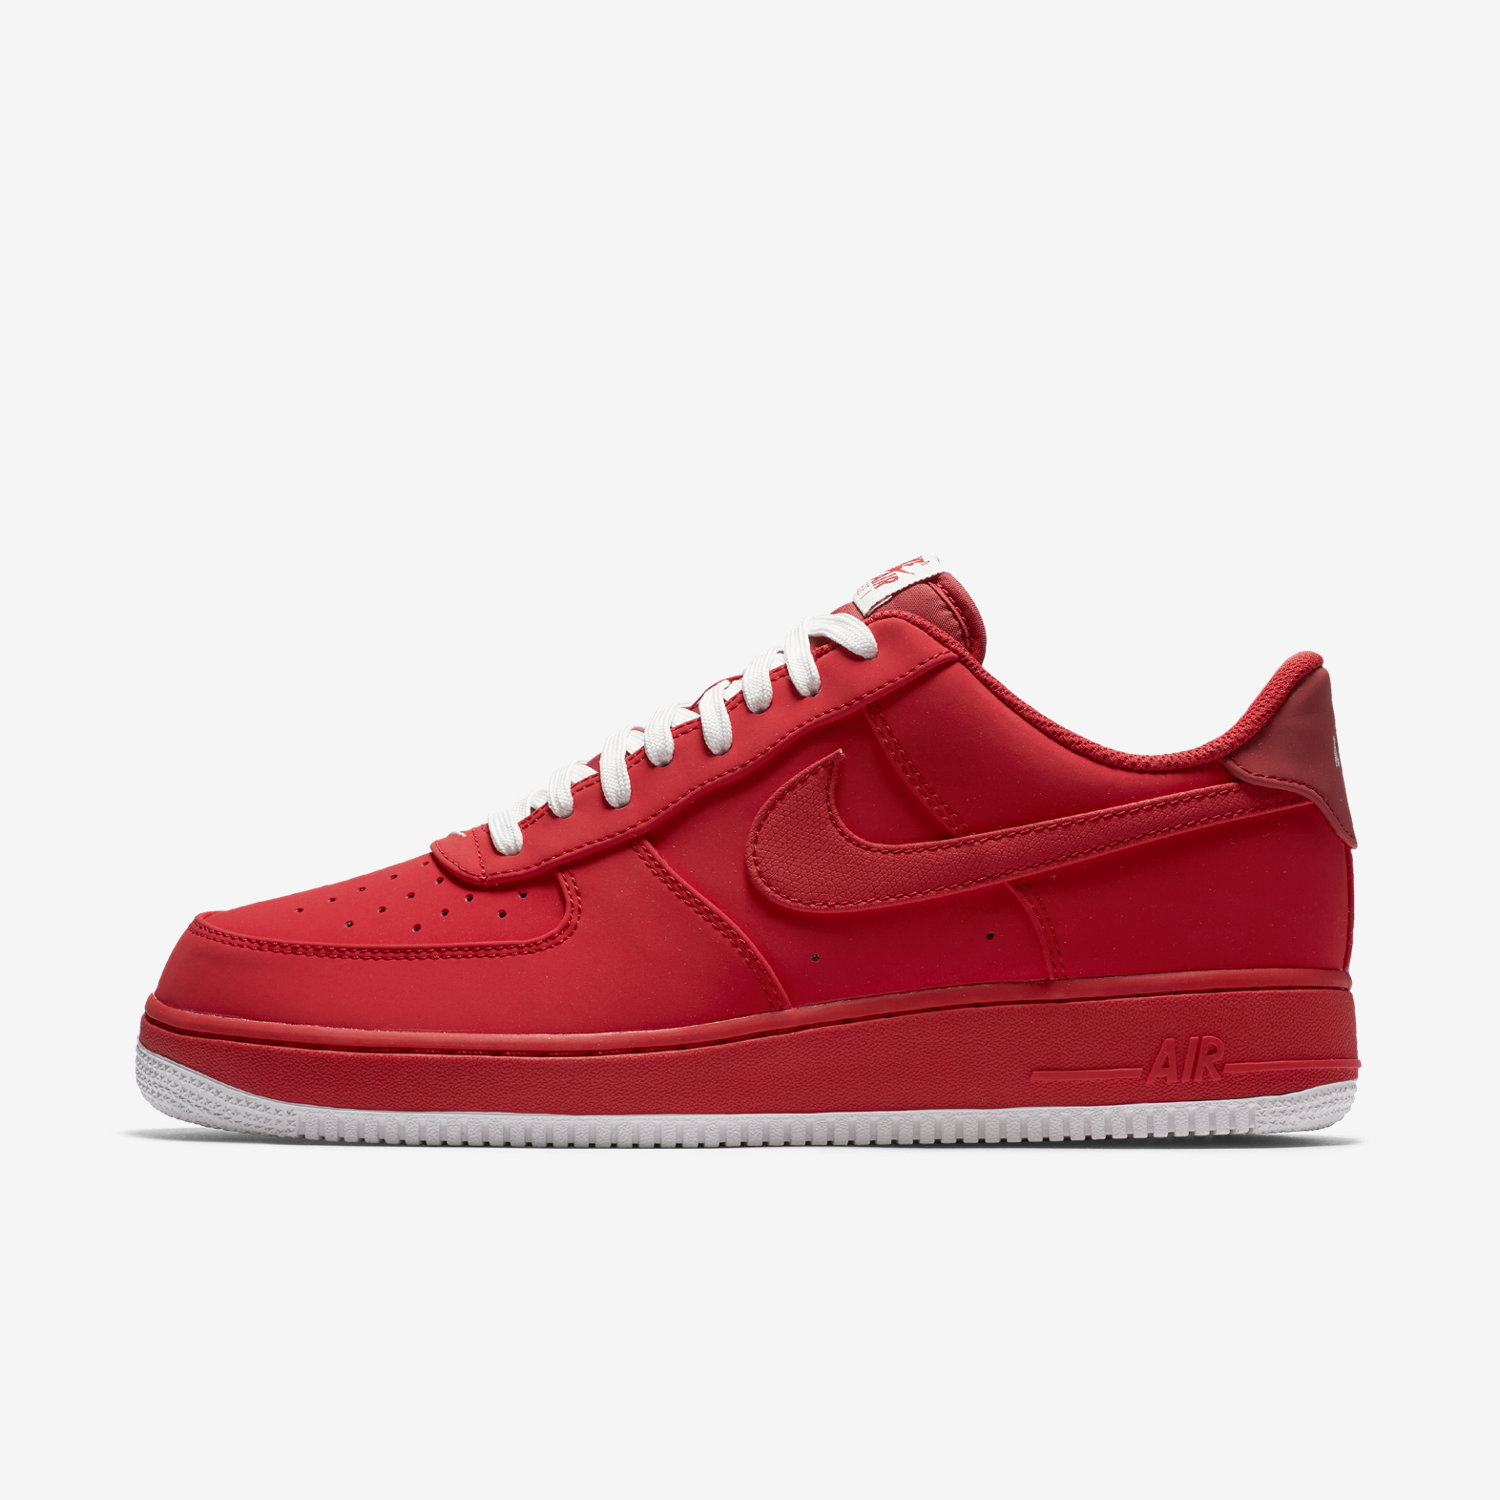 παπουτσια outdoor ανδρικα Nike Air Force 1 κοκκινα/κοκκινα 16729125UE